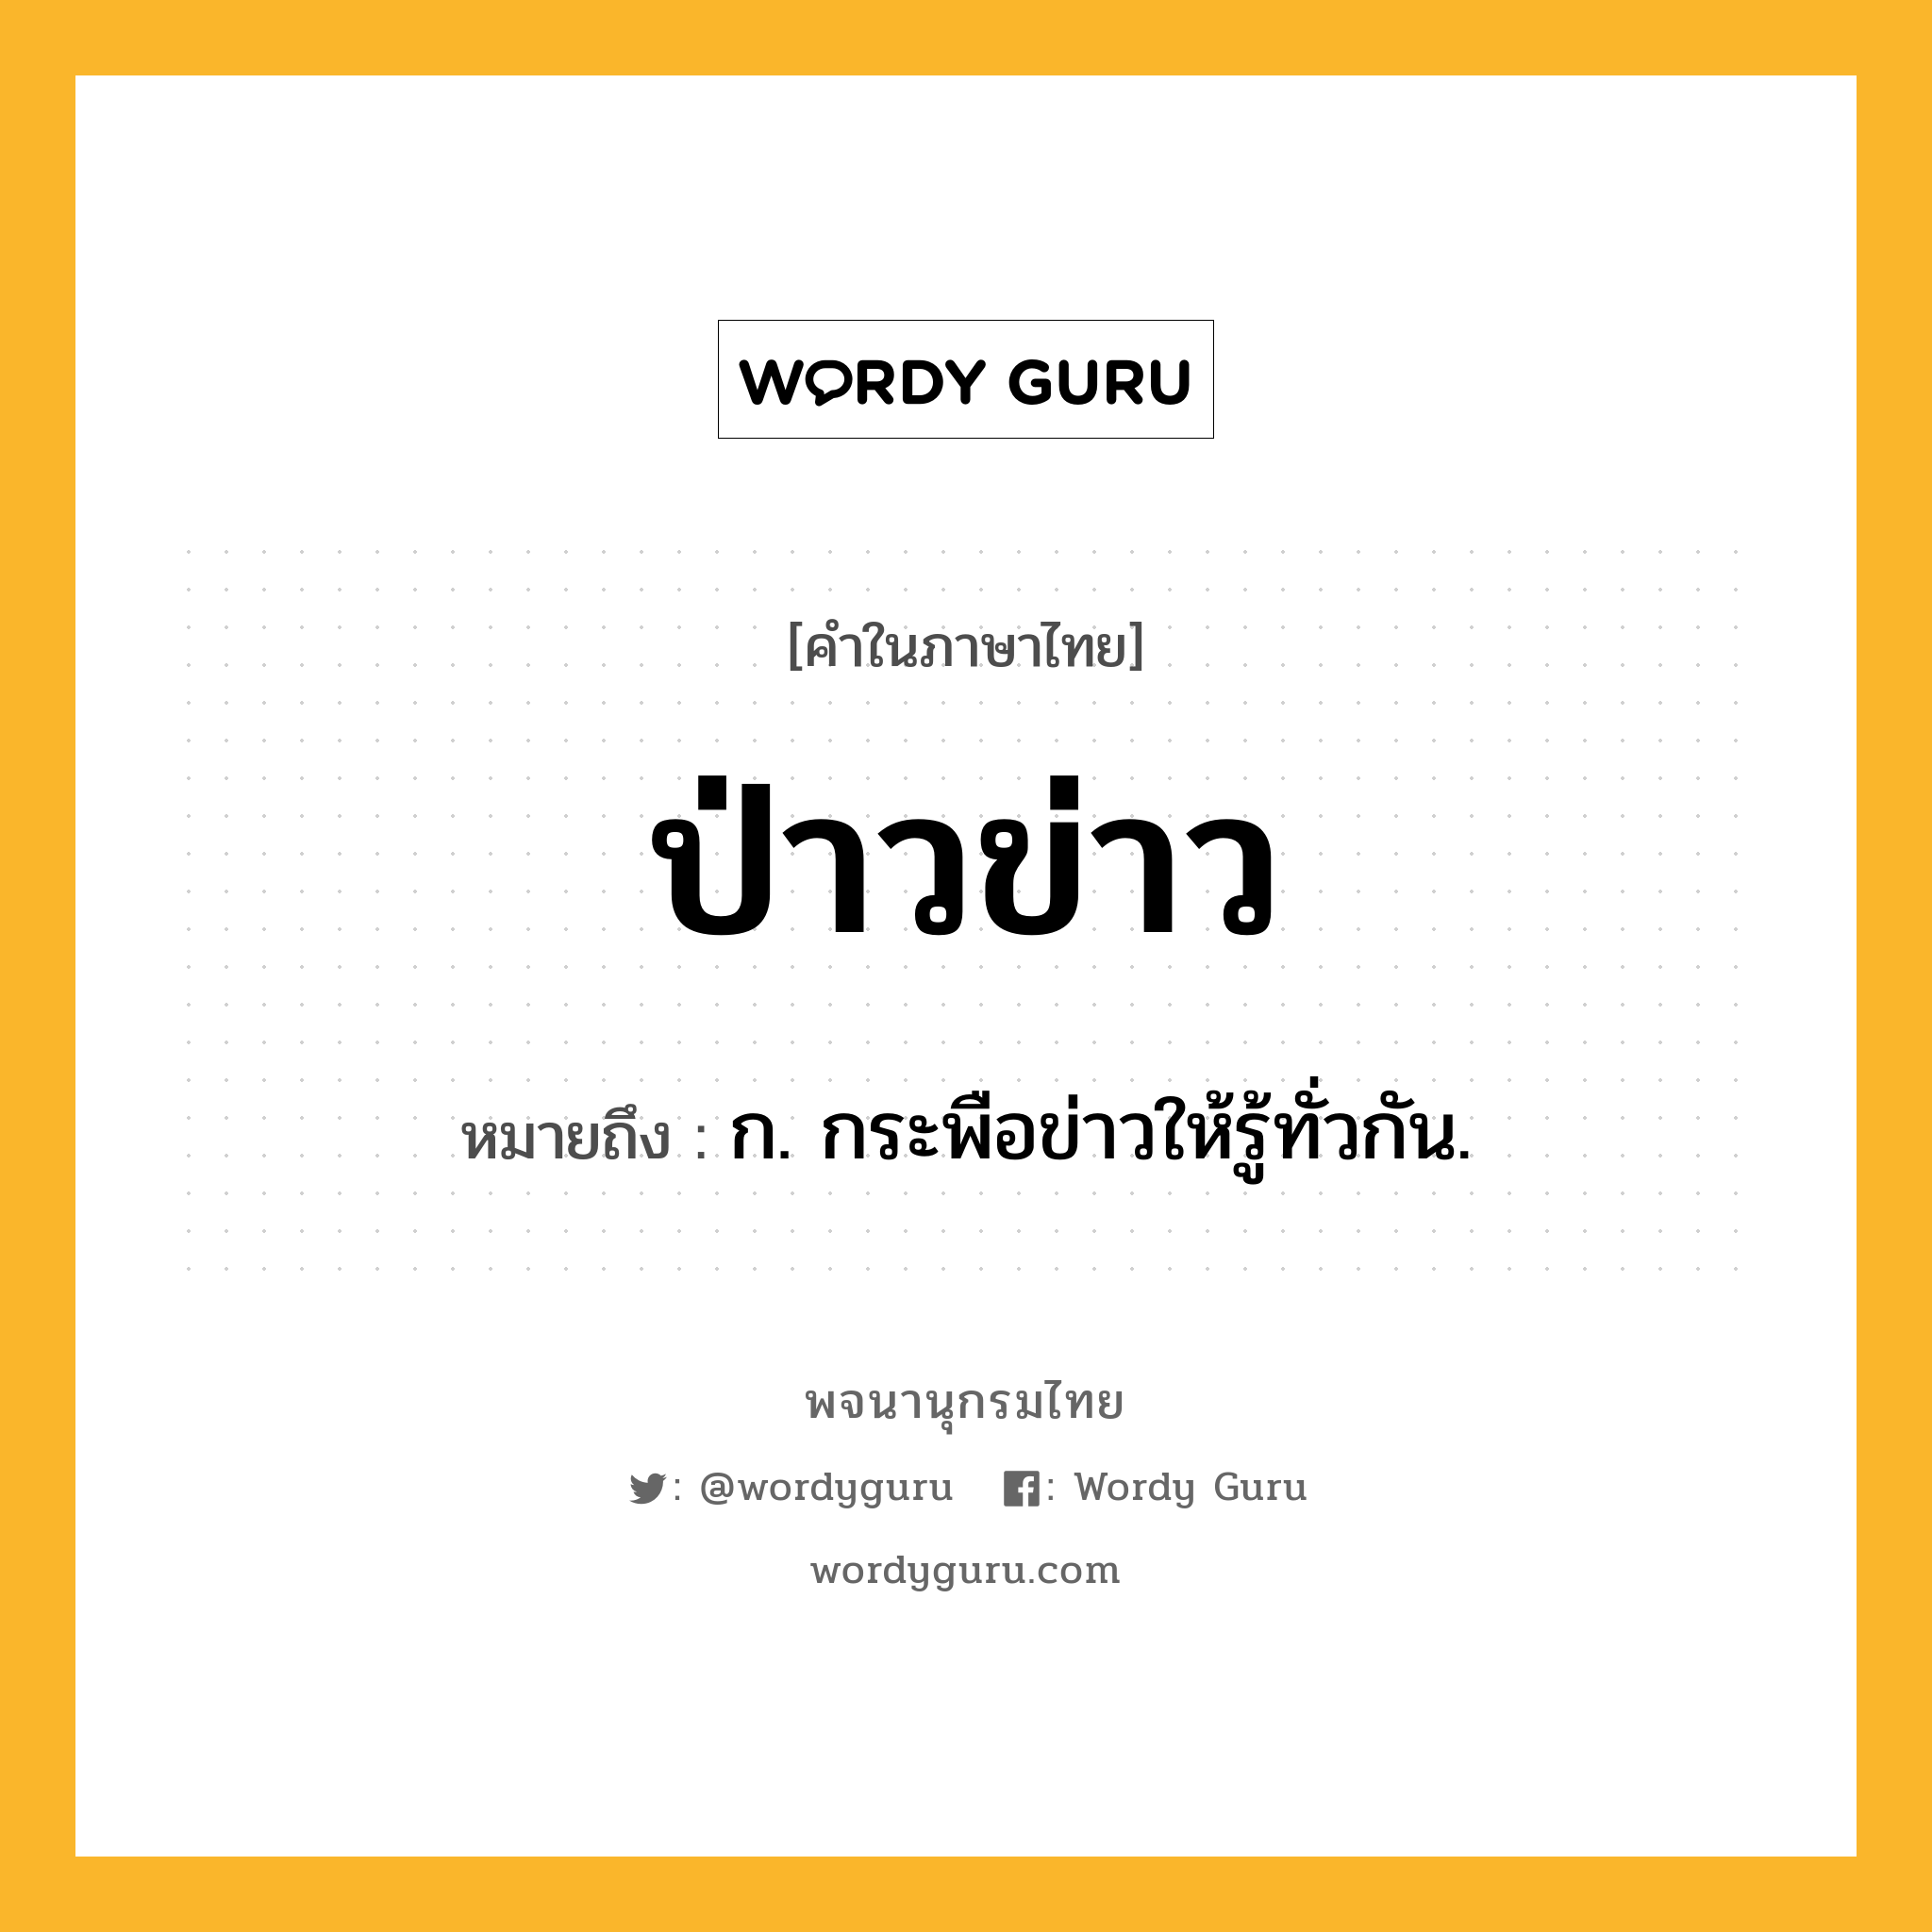 ป่าวข่าว ความหมาย หมายถึงอะไร?, คำในภาษาไทย ป่าวข่าว หมายถึง ก. กระพือข่าวให้รู้ทั่วกัน.